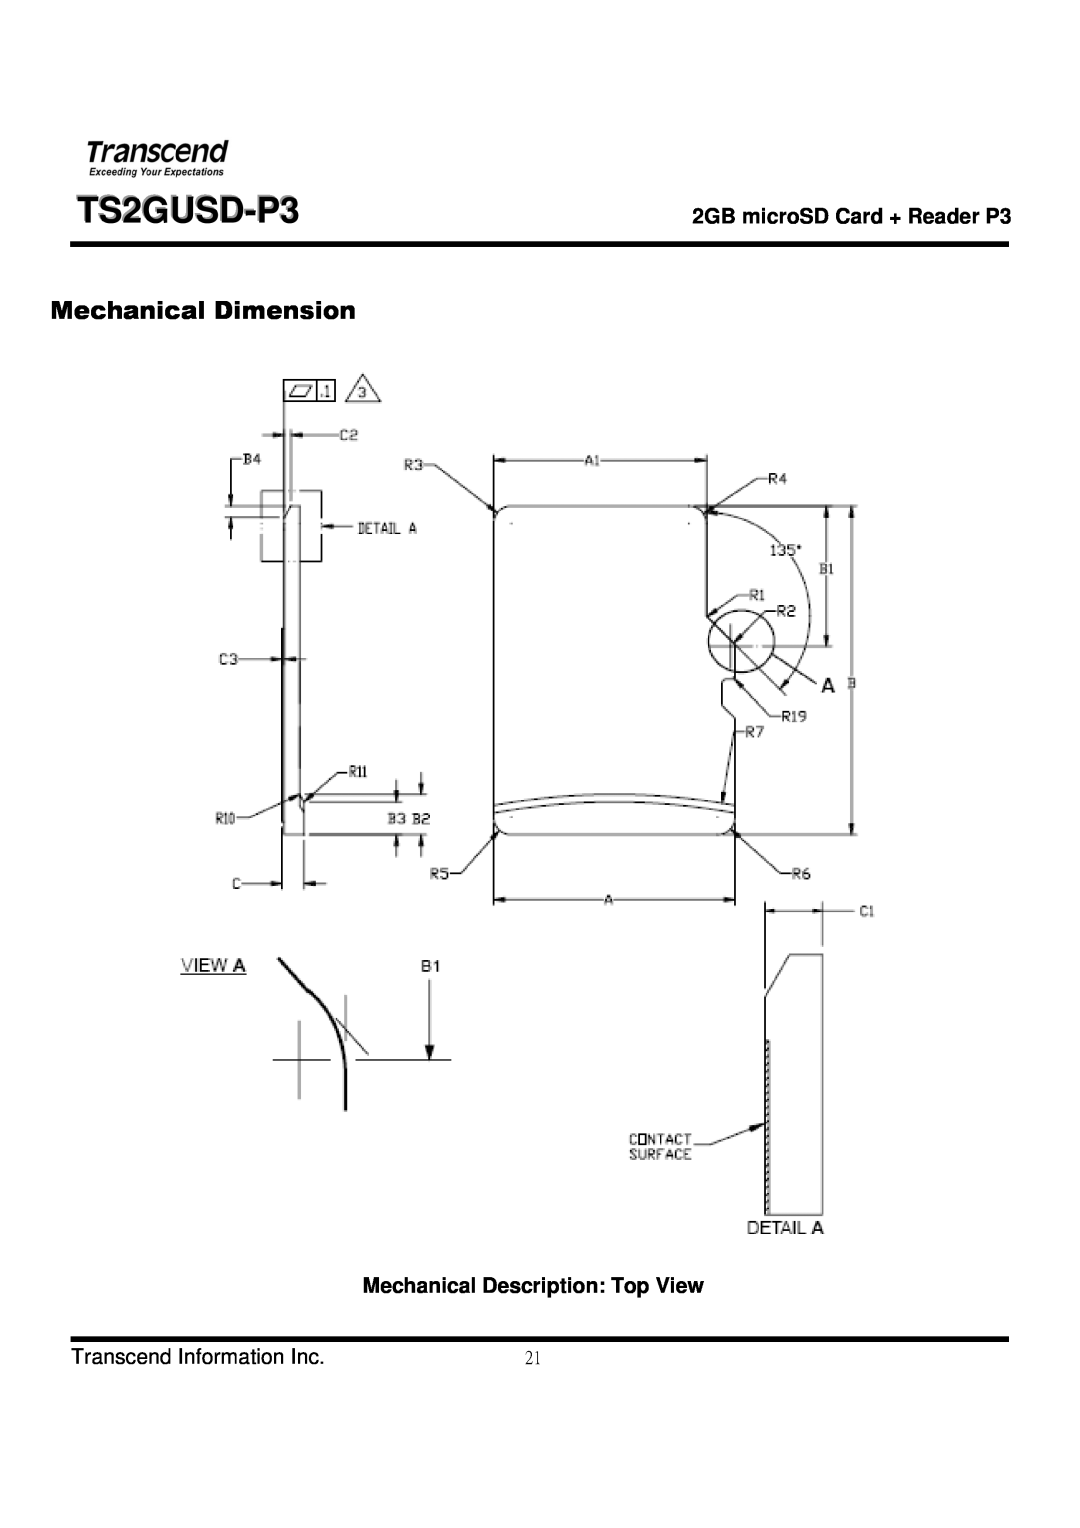 Transcend Information TS2GUSD-P3 manual Mechanical Description Top View, Mechanical Dimension, Transcend Information Inc 